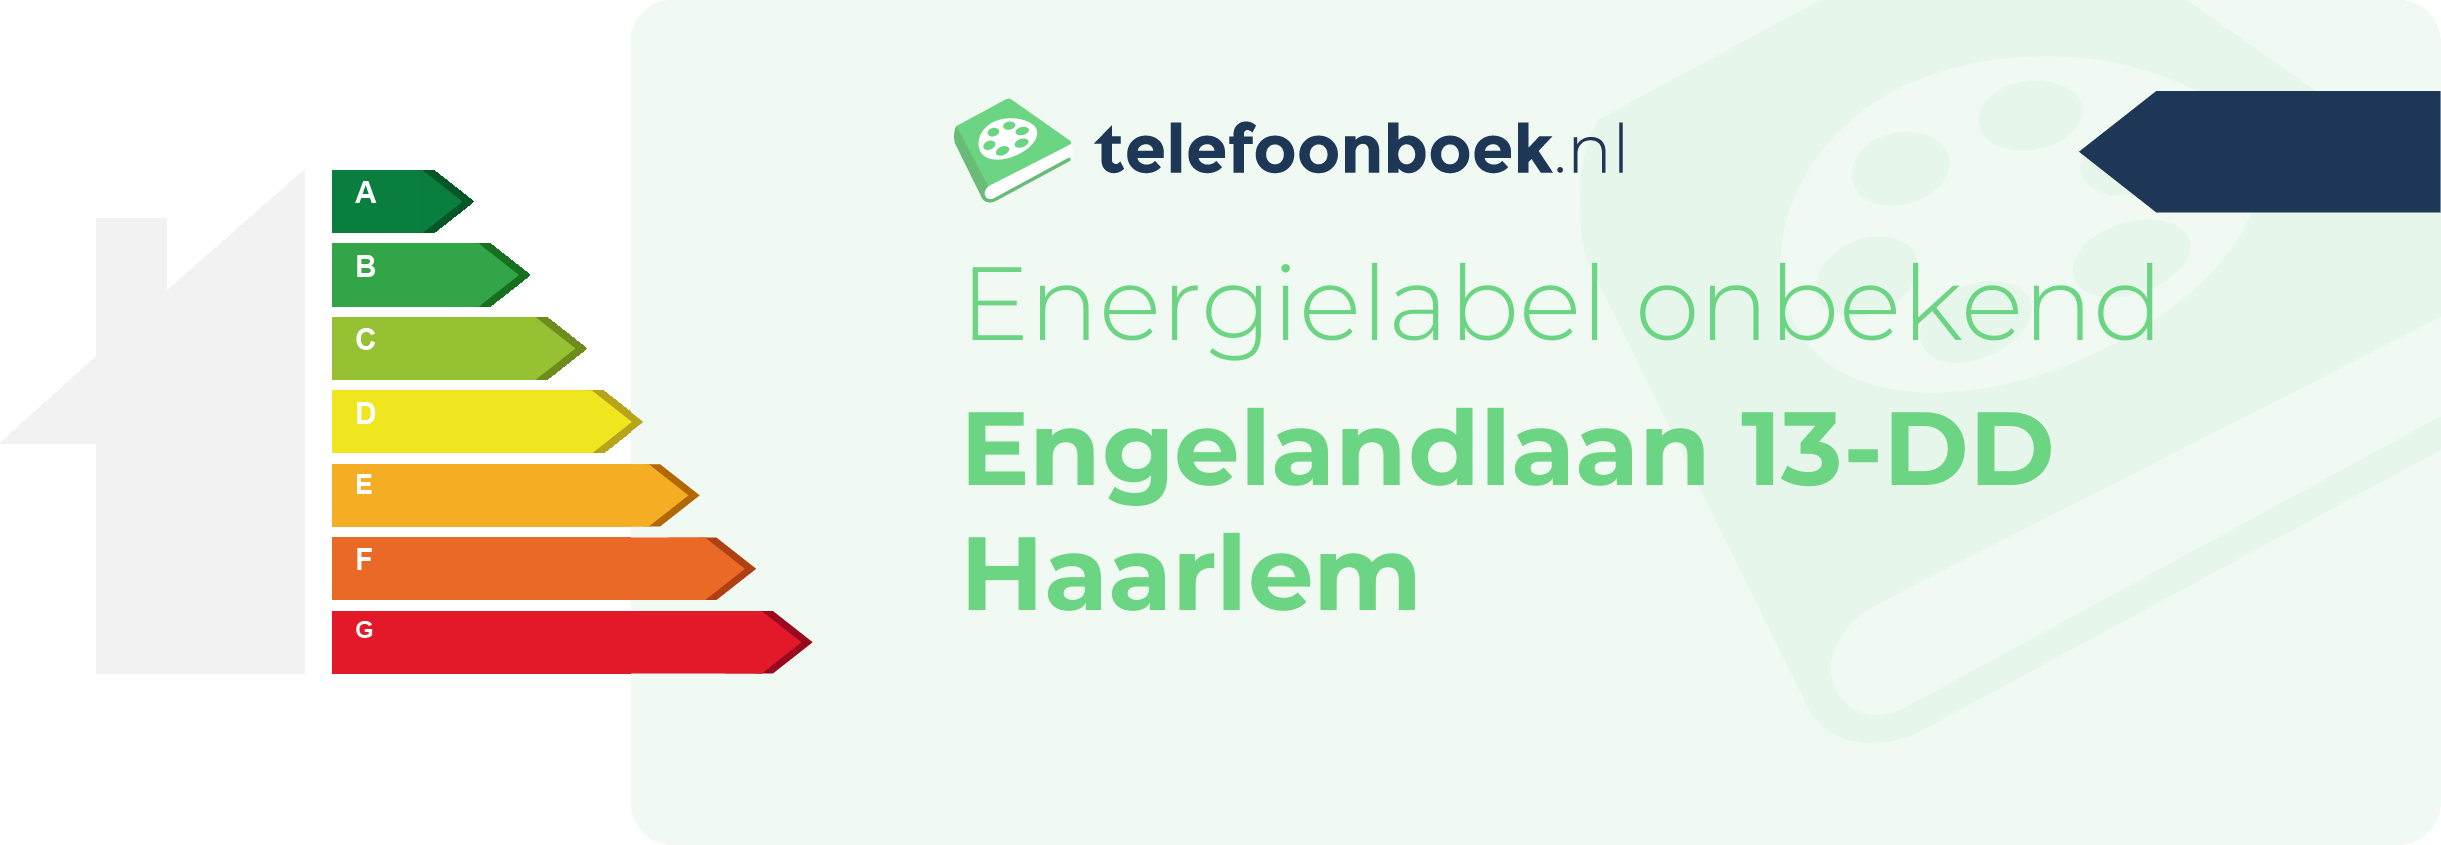 Energielabel Engelandlaan 13-DD Haarlem